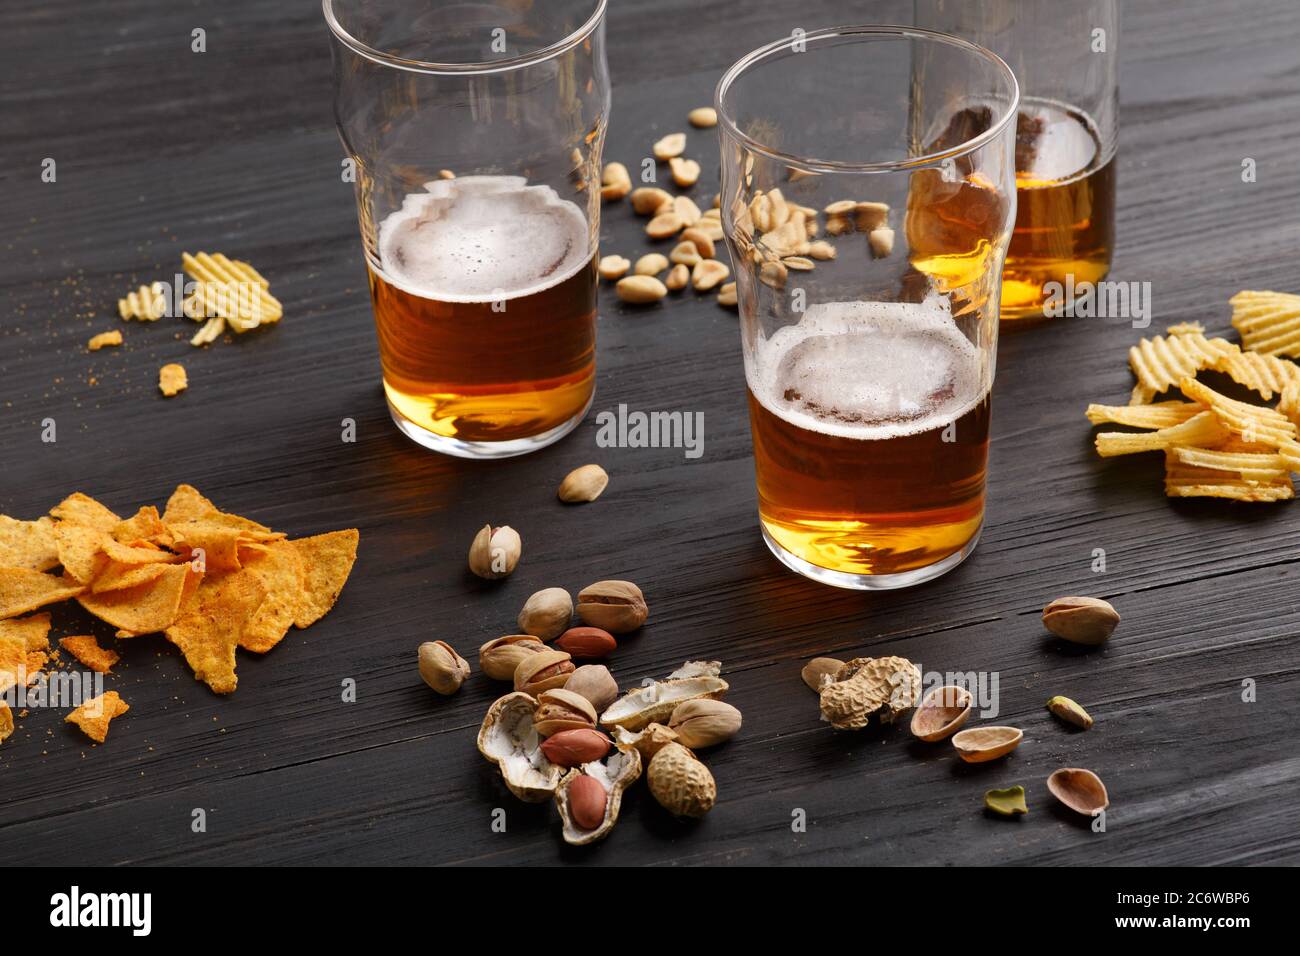 Birra alla spina. Bicchiere di birra e bottiglia incompiuta con bevanda, intorno sono arachidi, patatine e nachos Foto Stock